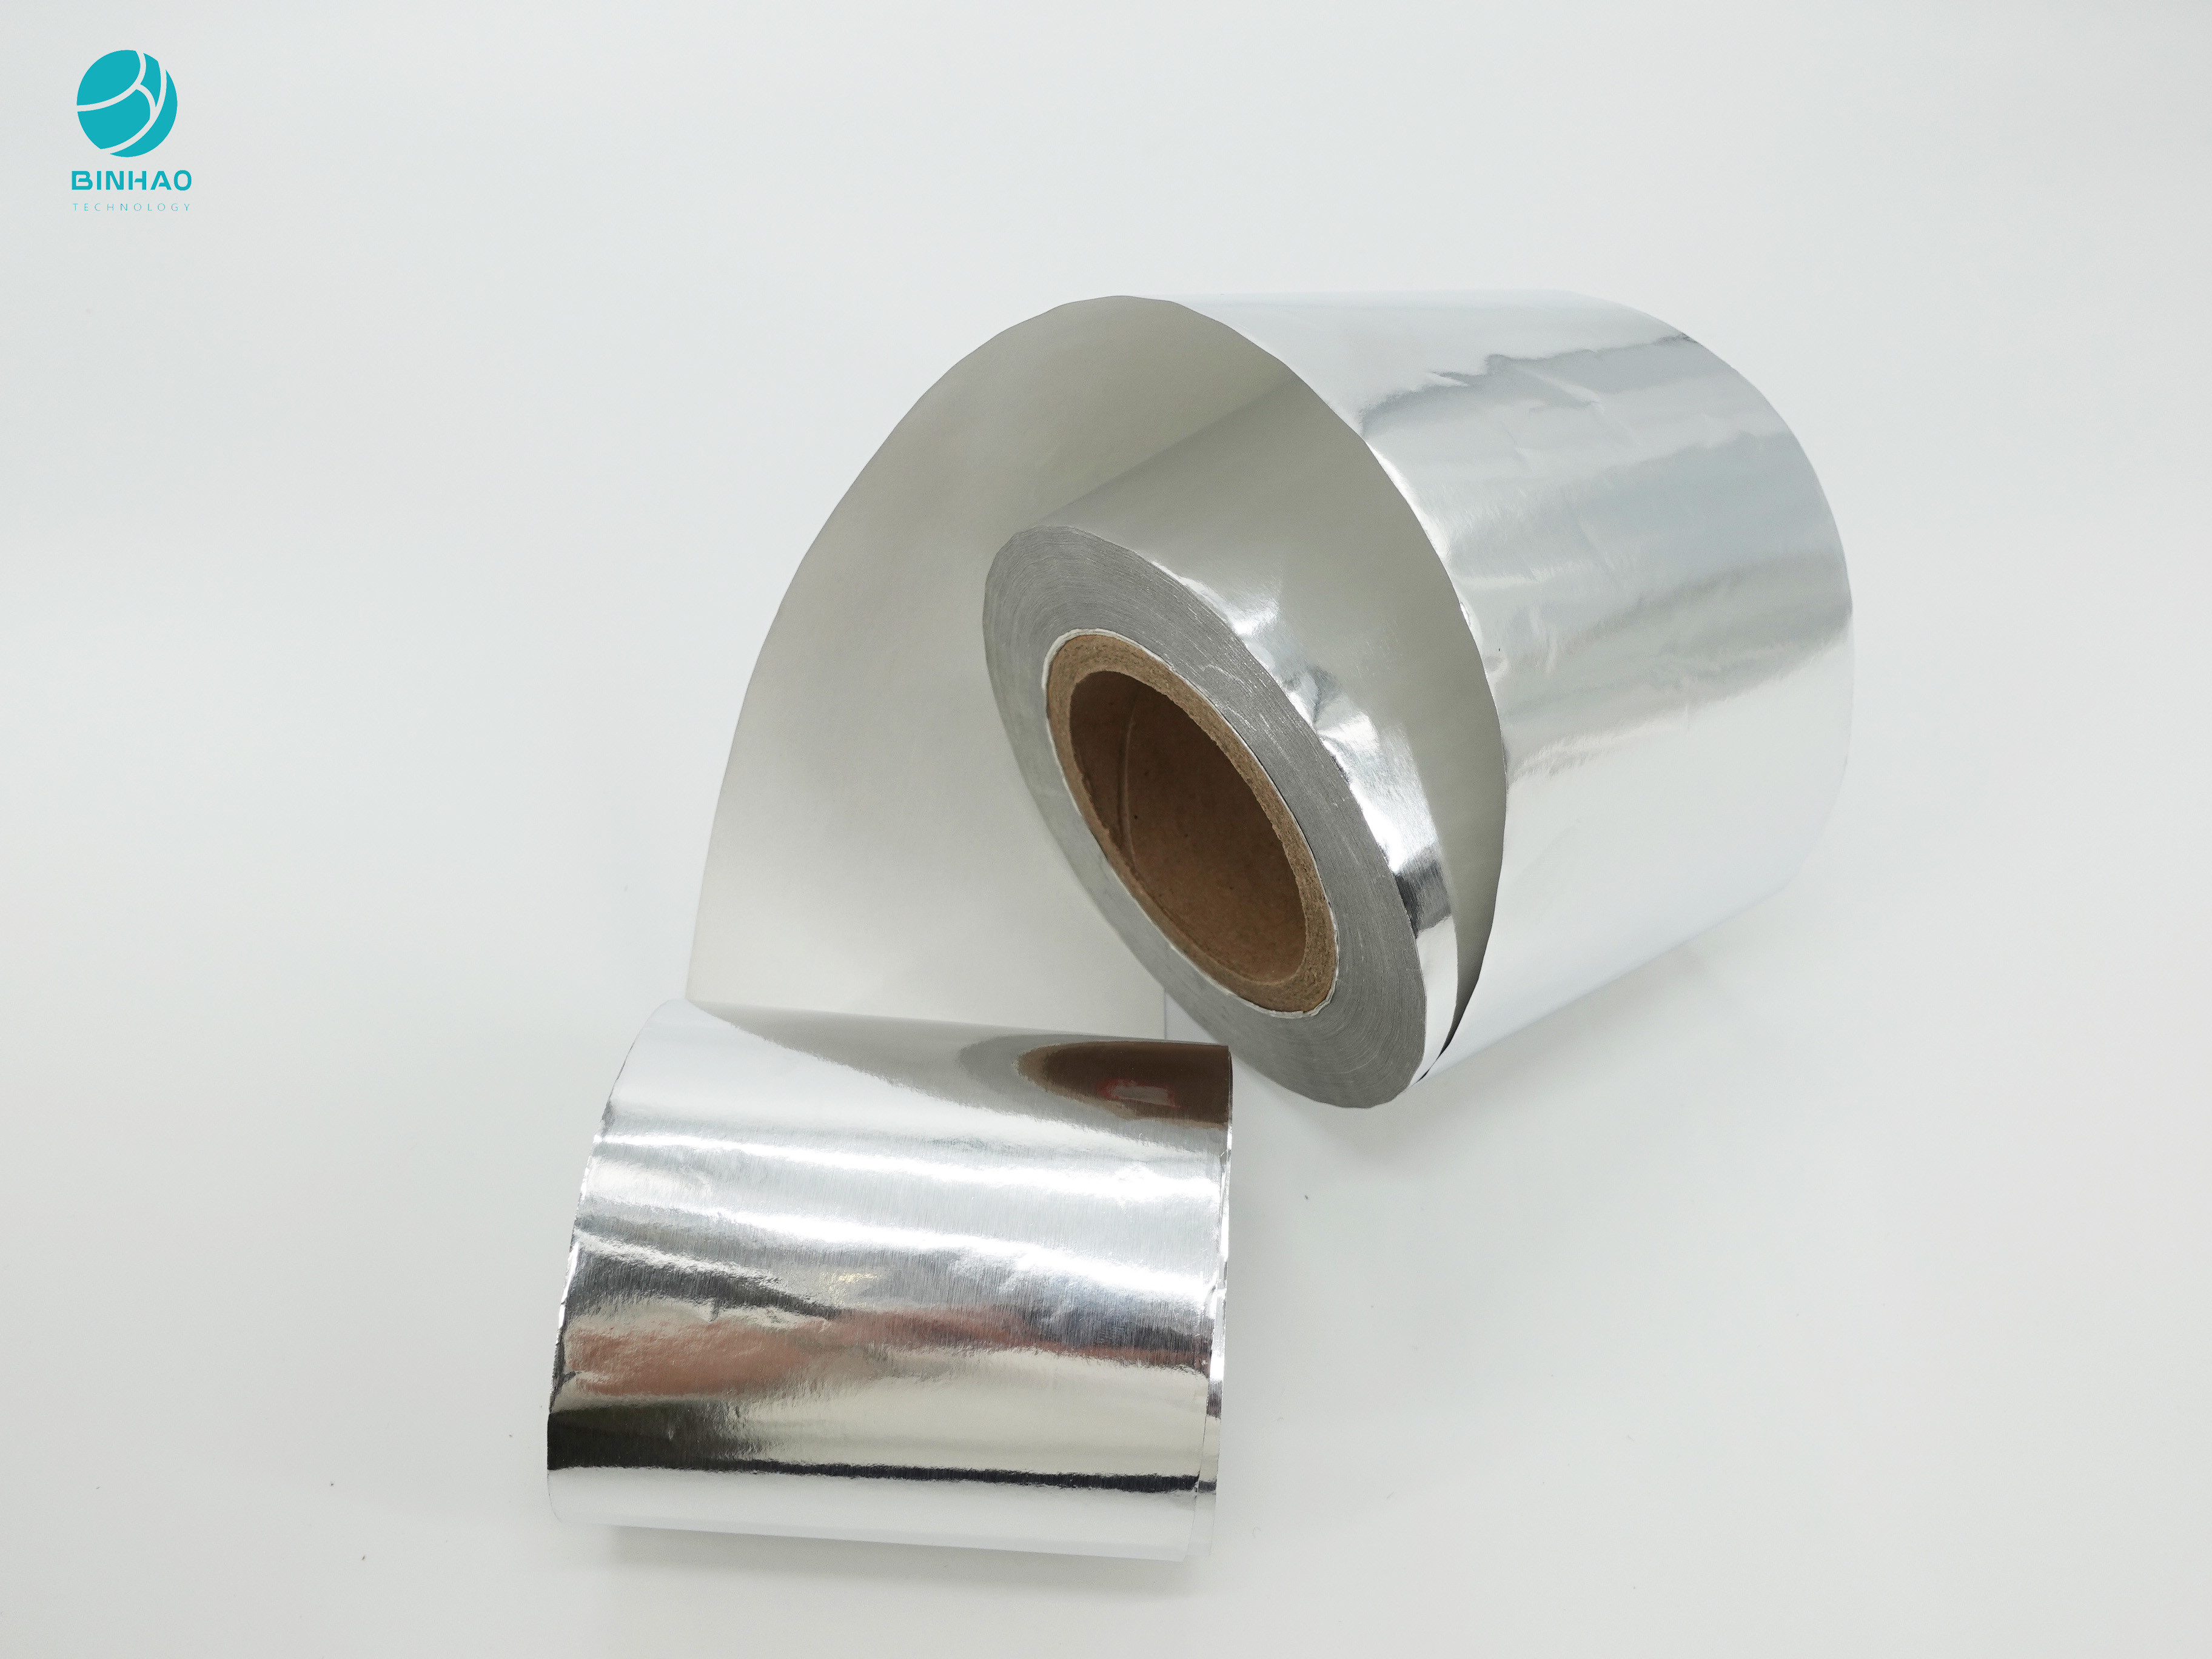 Papel laminado 114m m modificado para requisitos particulares de papel de aluminio del logotipo para el empaquetado del cigarrillo